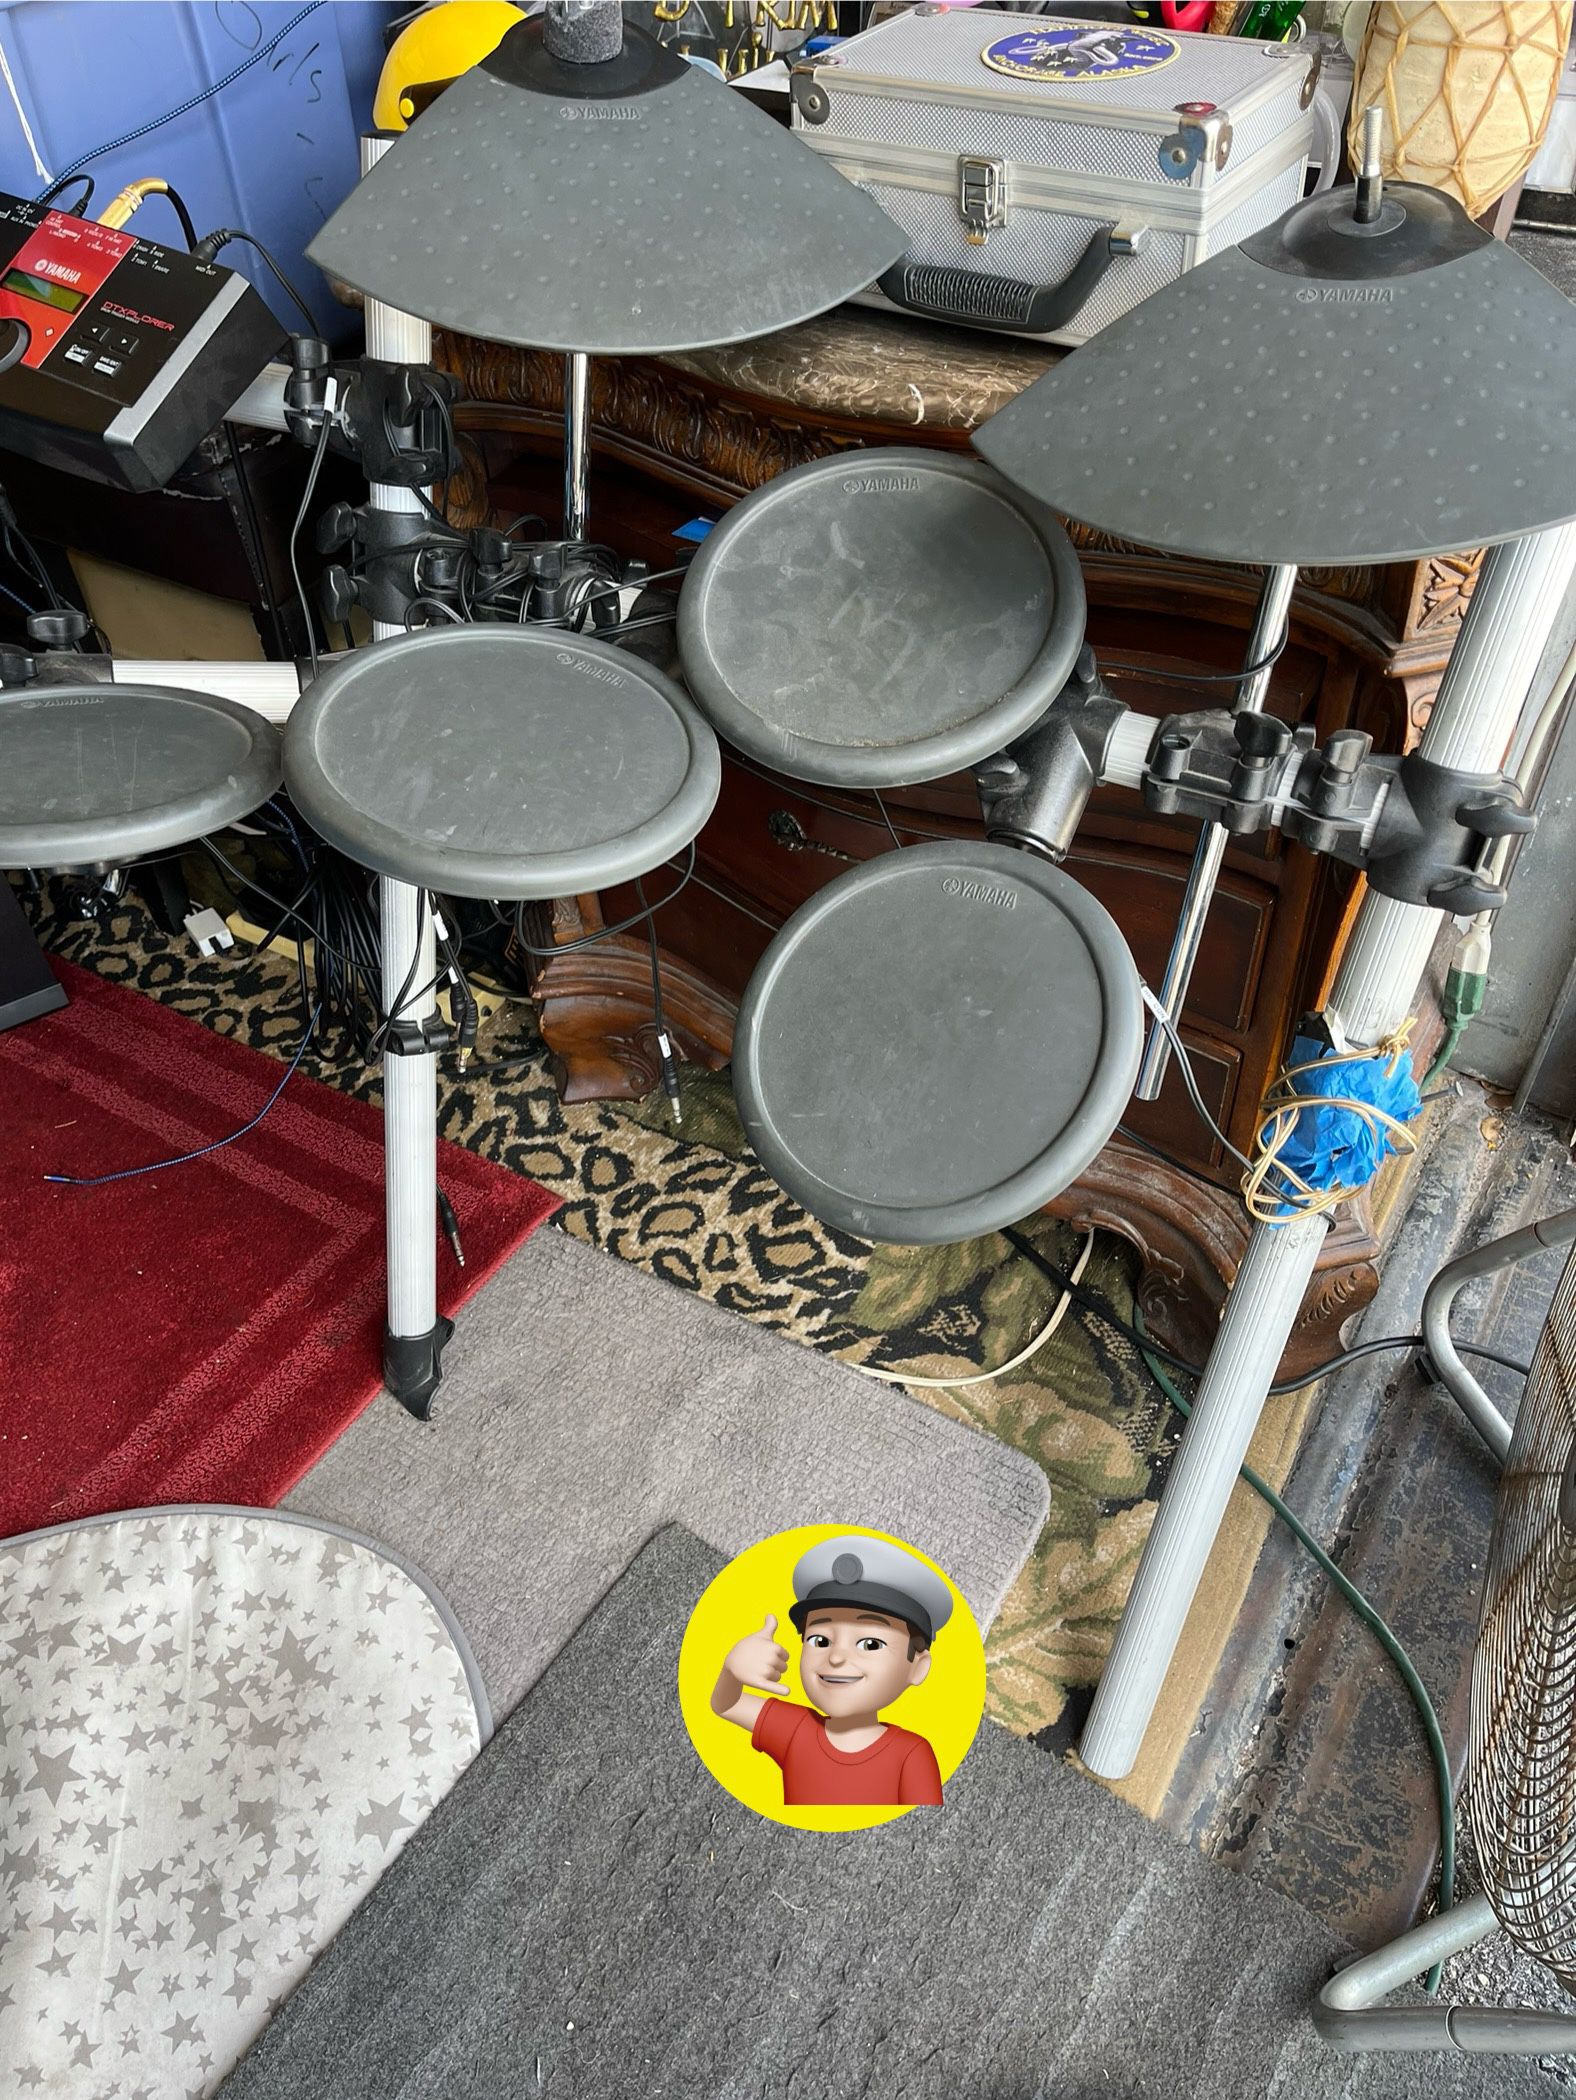 💥 Yamaha Electronic Drum Set $50